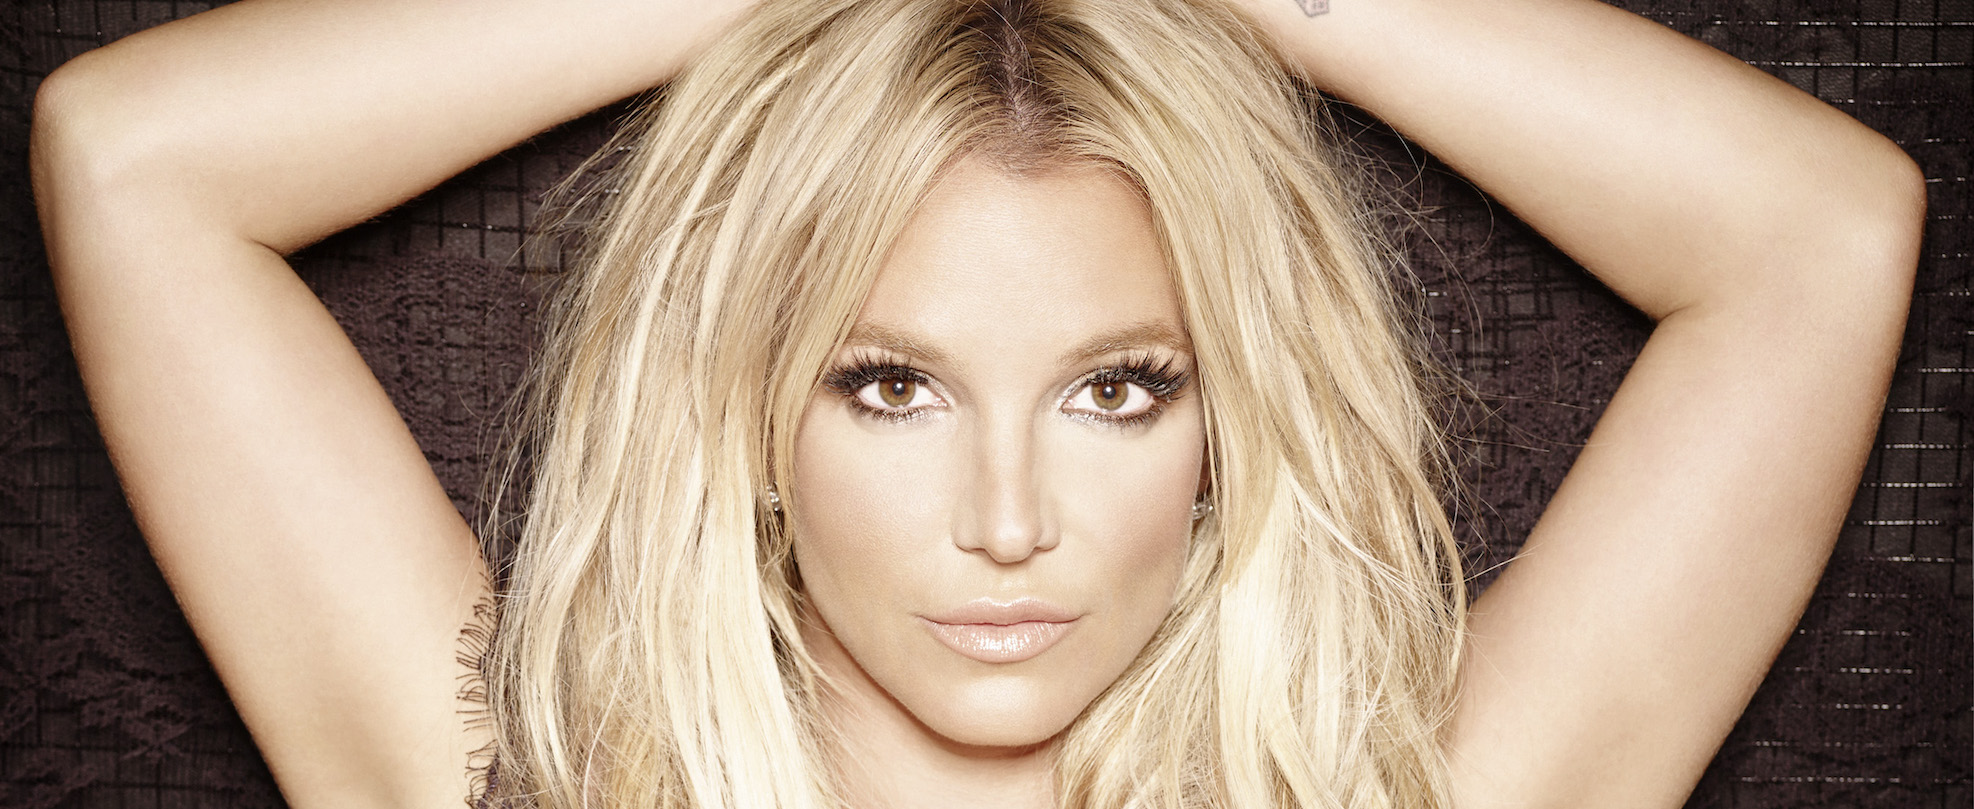 Britney Spears ın otobiyografik kitabına hukuki engel